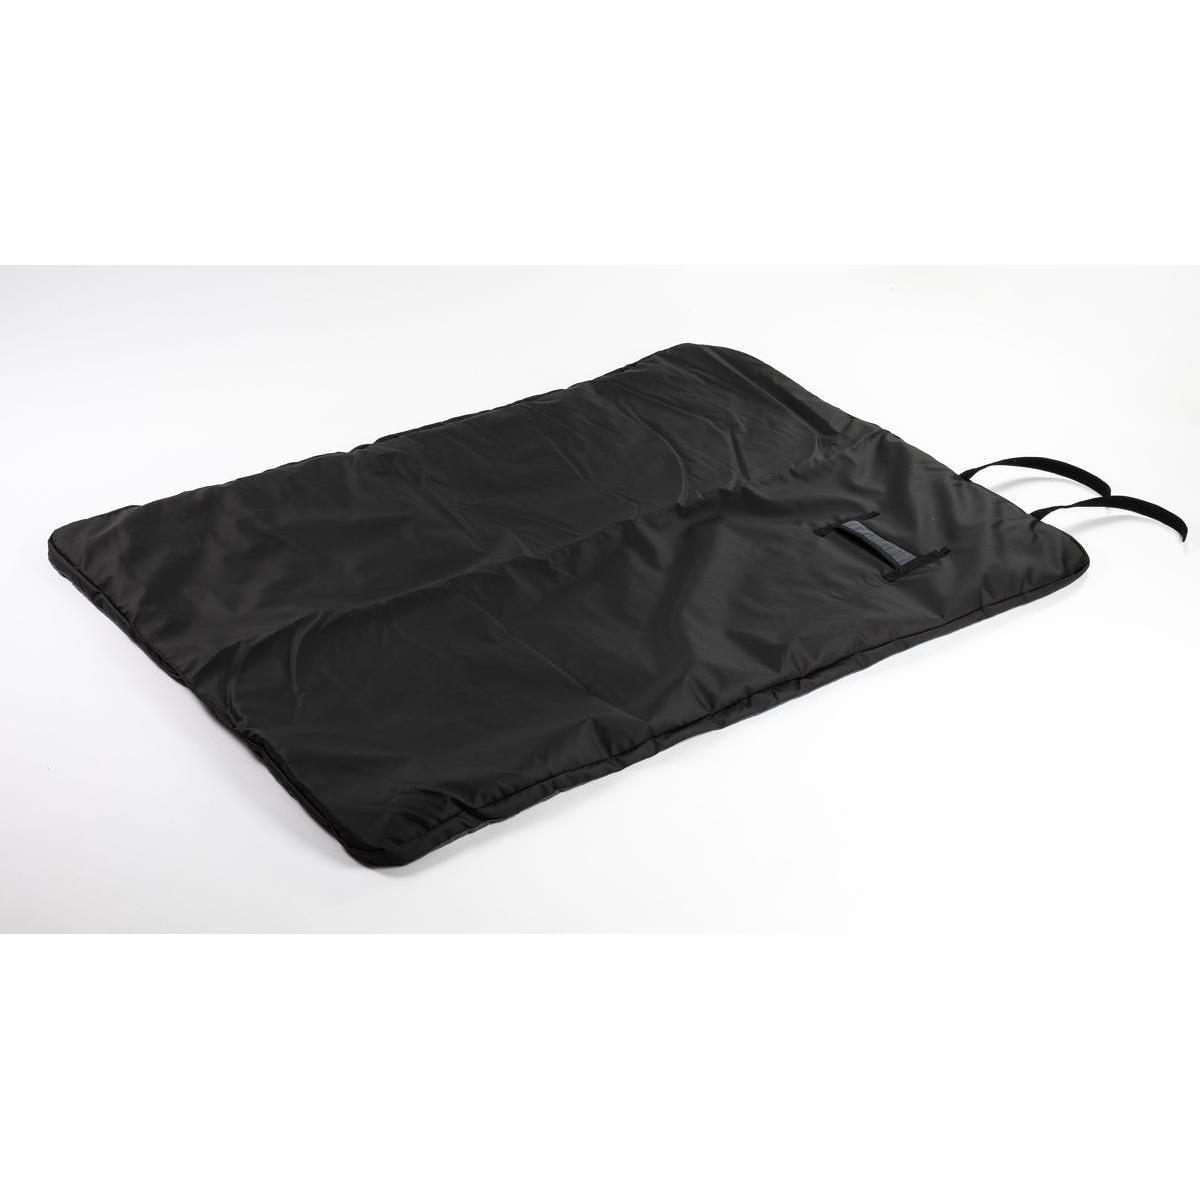 Teppiche Winter USB Heizdecke Camping Schlafmatratze 3 Stufige Einstellbare  Isolierung Heizkissen Für Outdoor Wandern Von 34,45 €